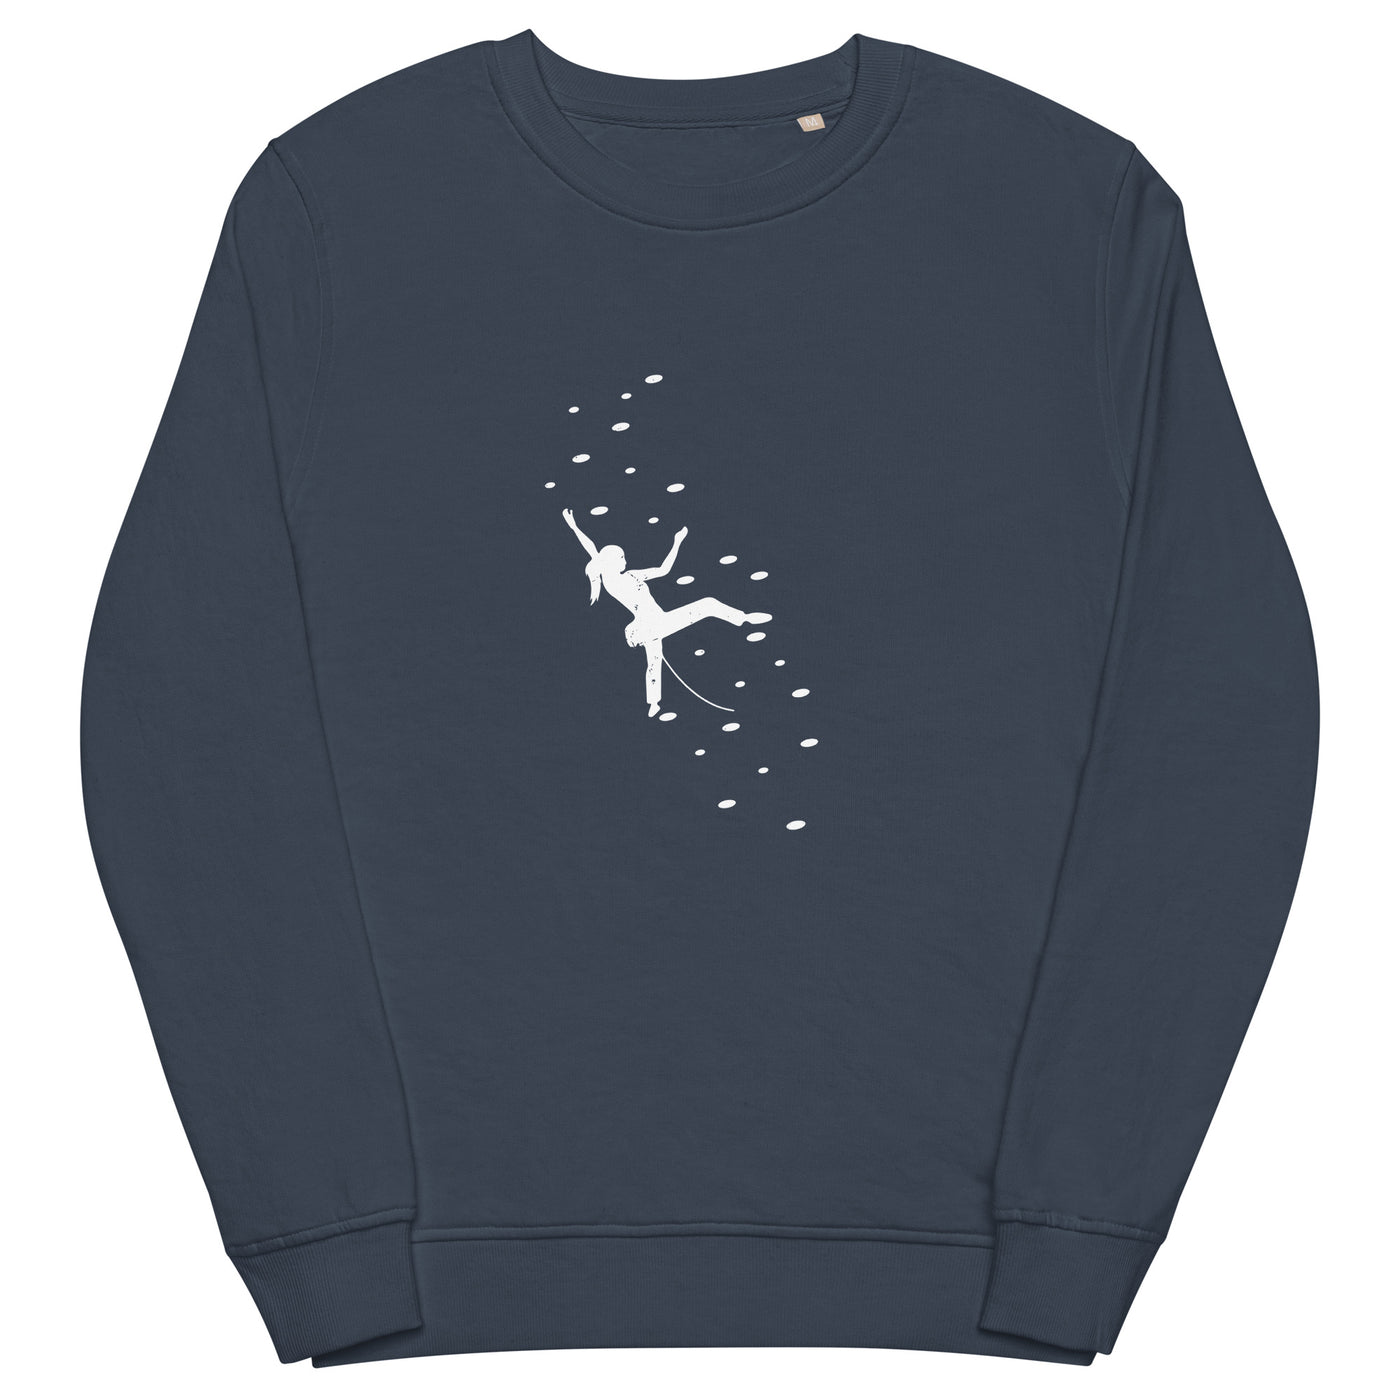 Klettergirl - Unisex Premium Organic Sweatshirt klettern xxx yyy zzz French Navy